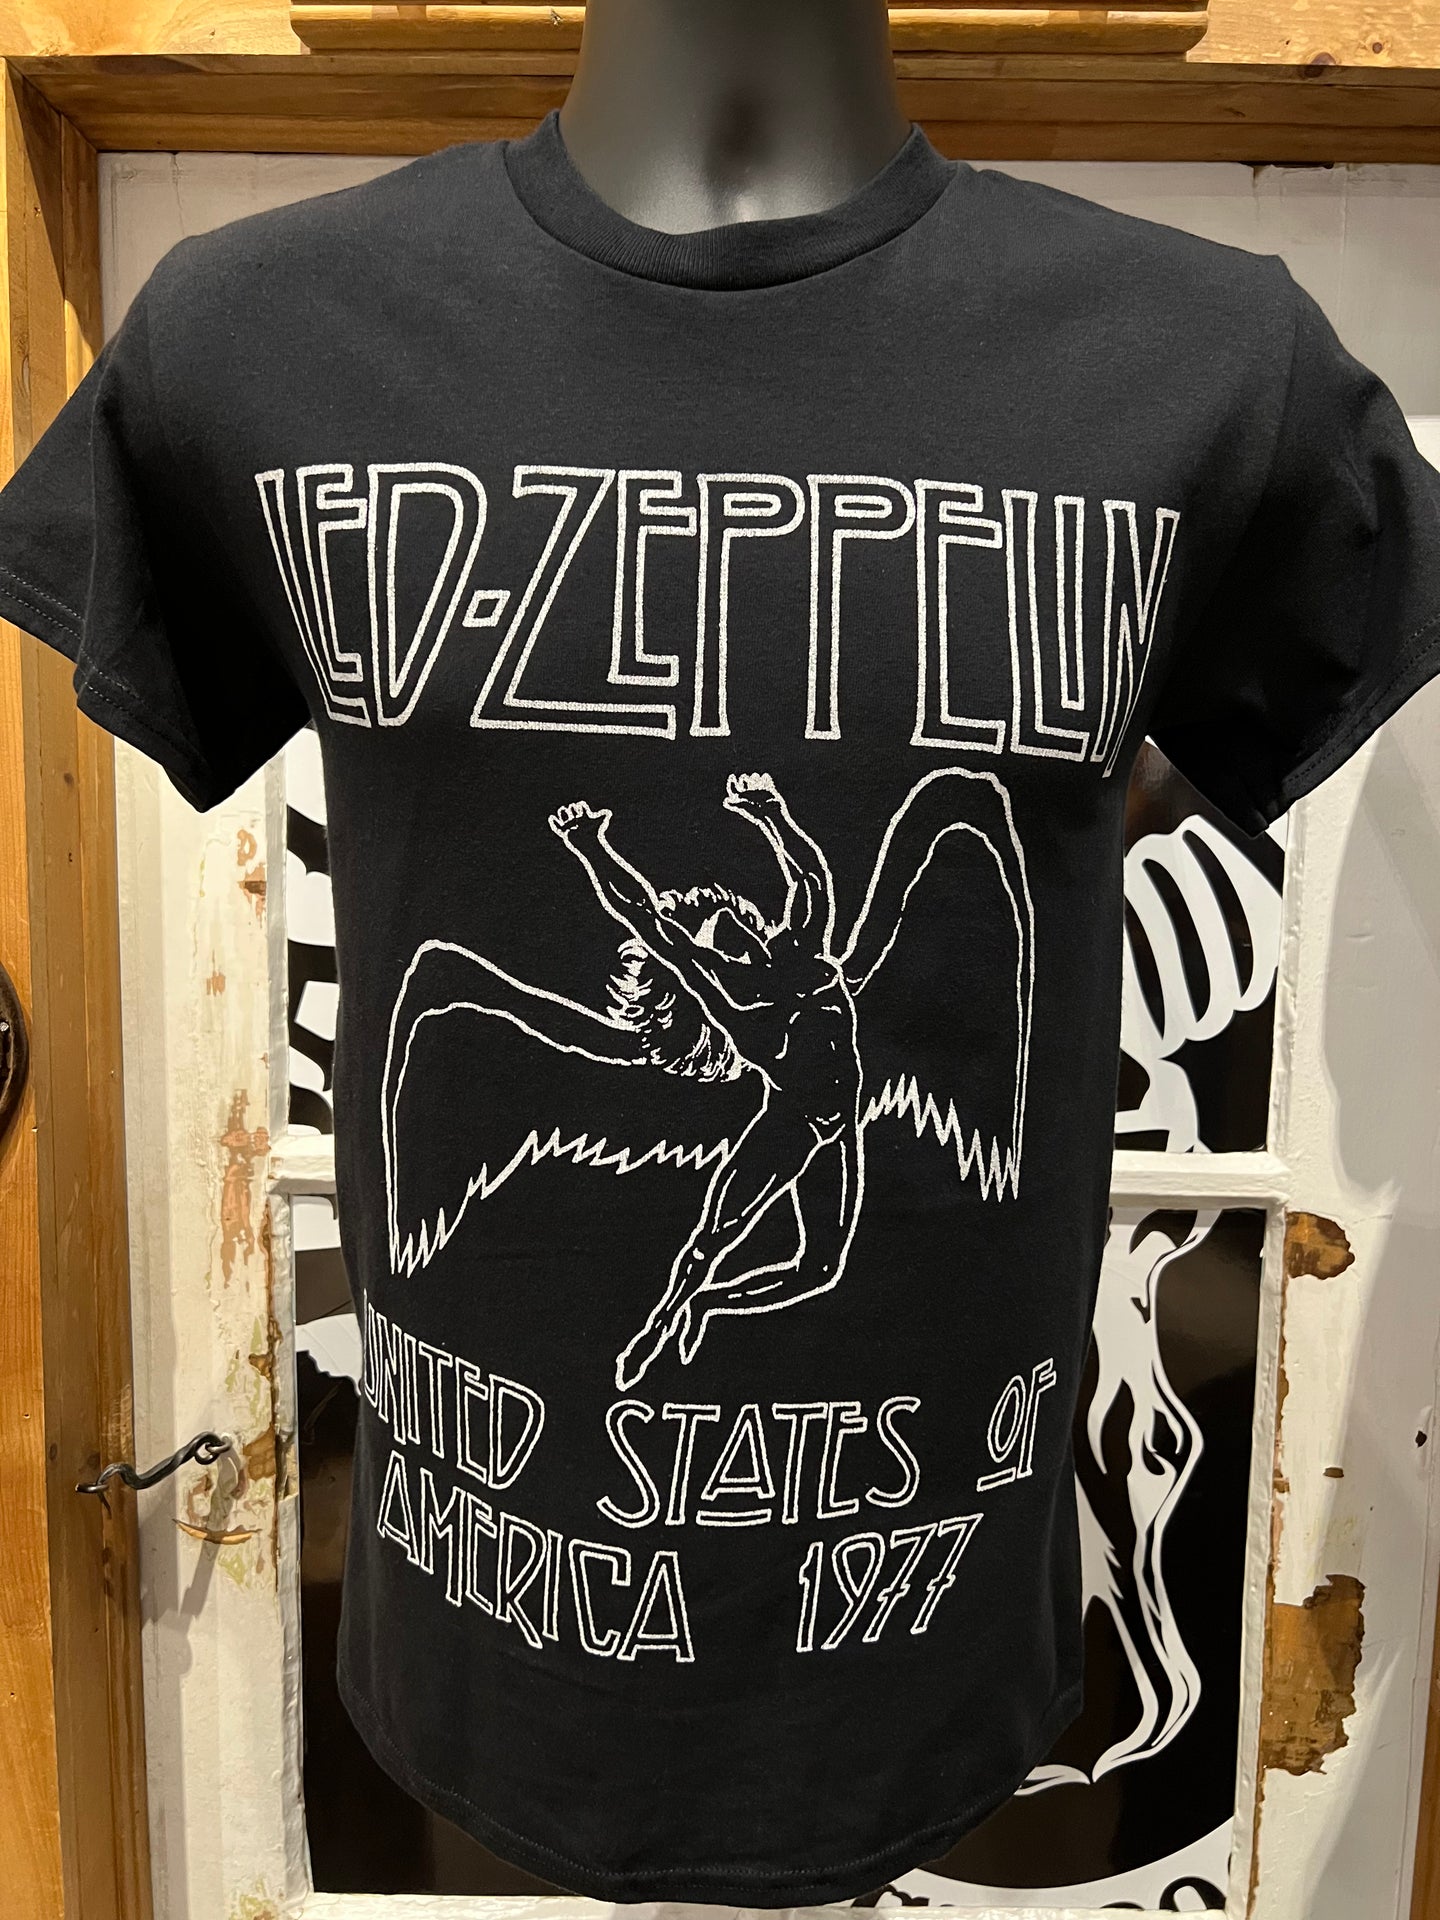 T-Shirt Led Zeppelin